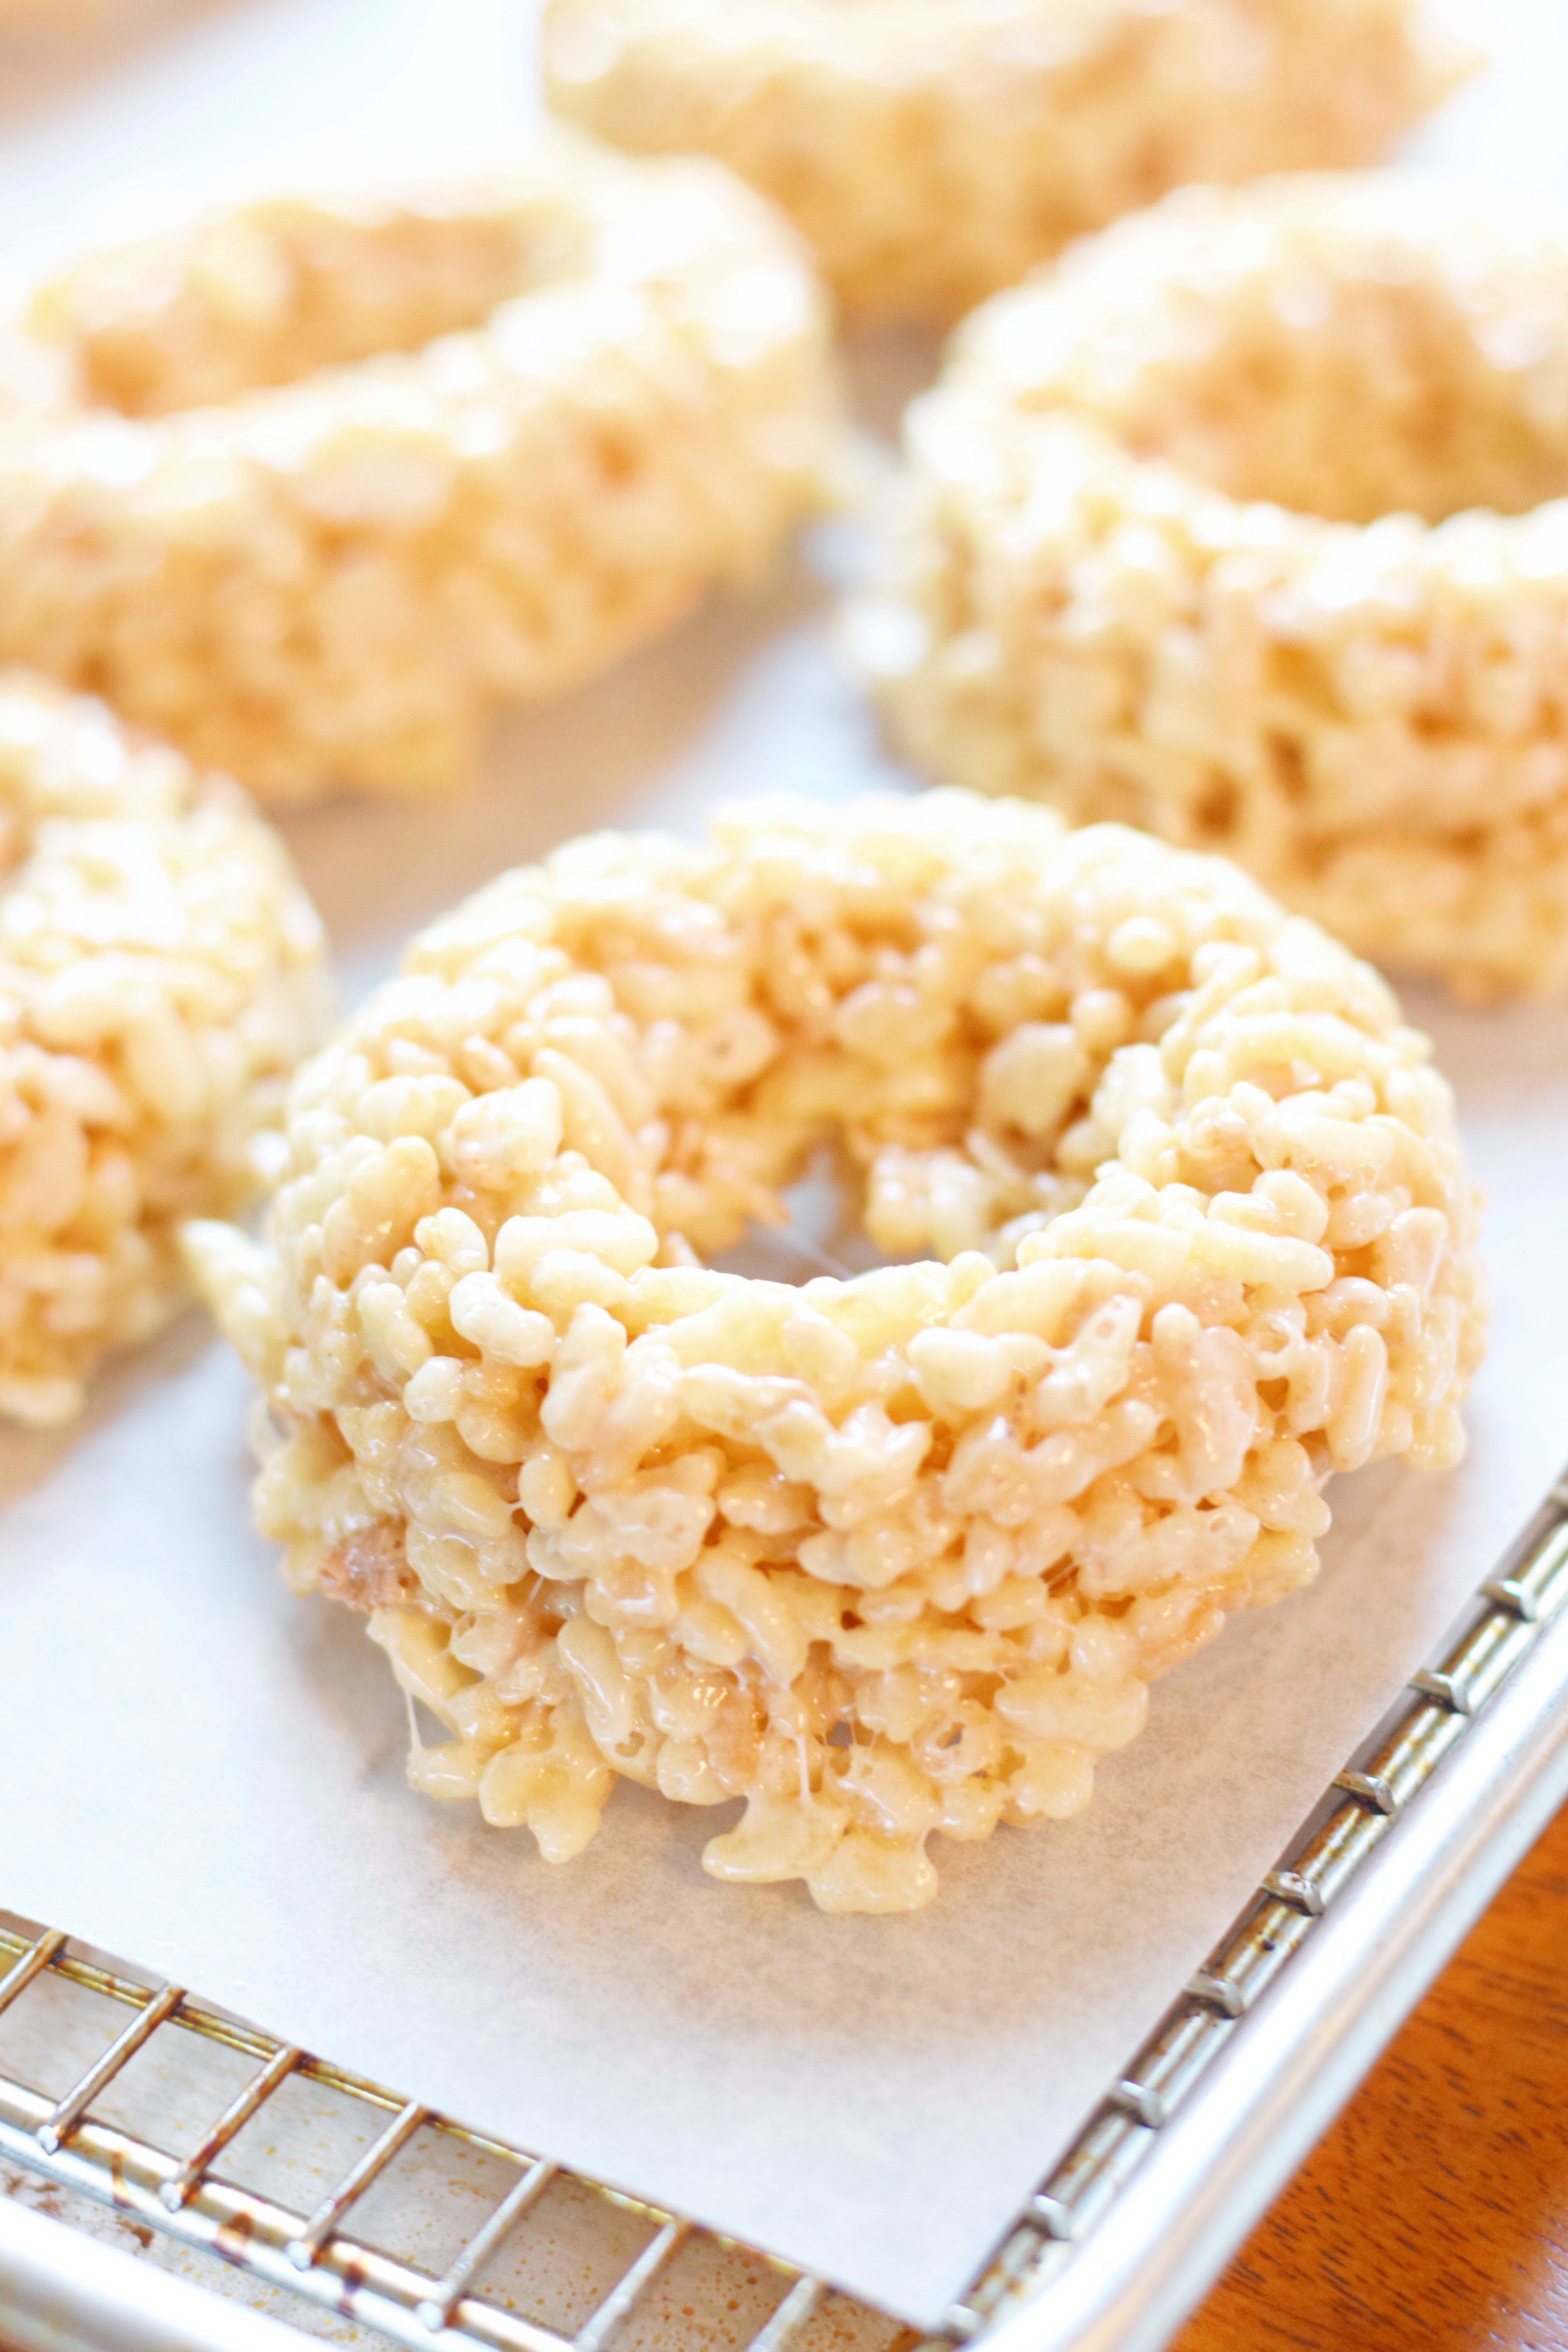 Rice Krispie Doughnuts For Valentine's Day - Rice Krispie Recipes - Rice Krispie Ideas - Rice Krispie Original Recipe - Doughnuts Easy - Easy Valentine's Day Recipe - Communikait by Kait Hanson